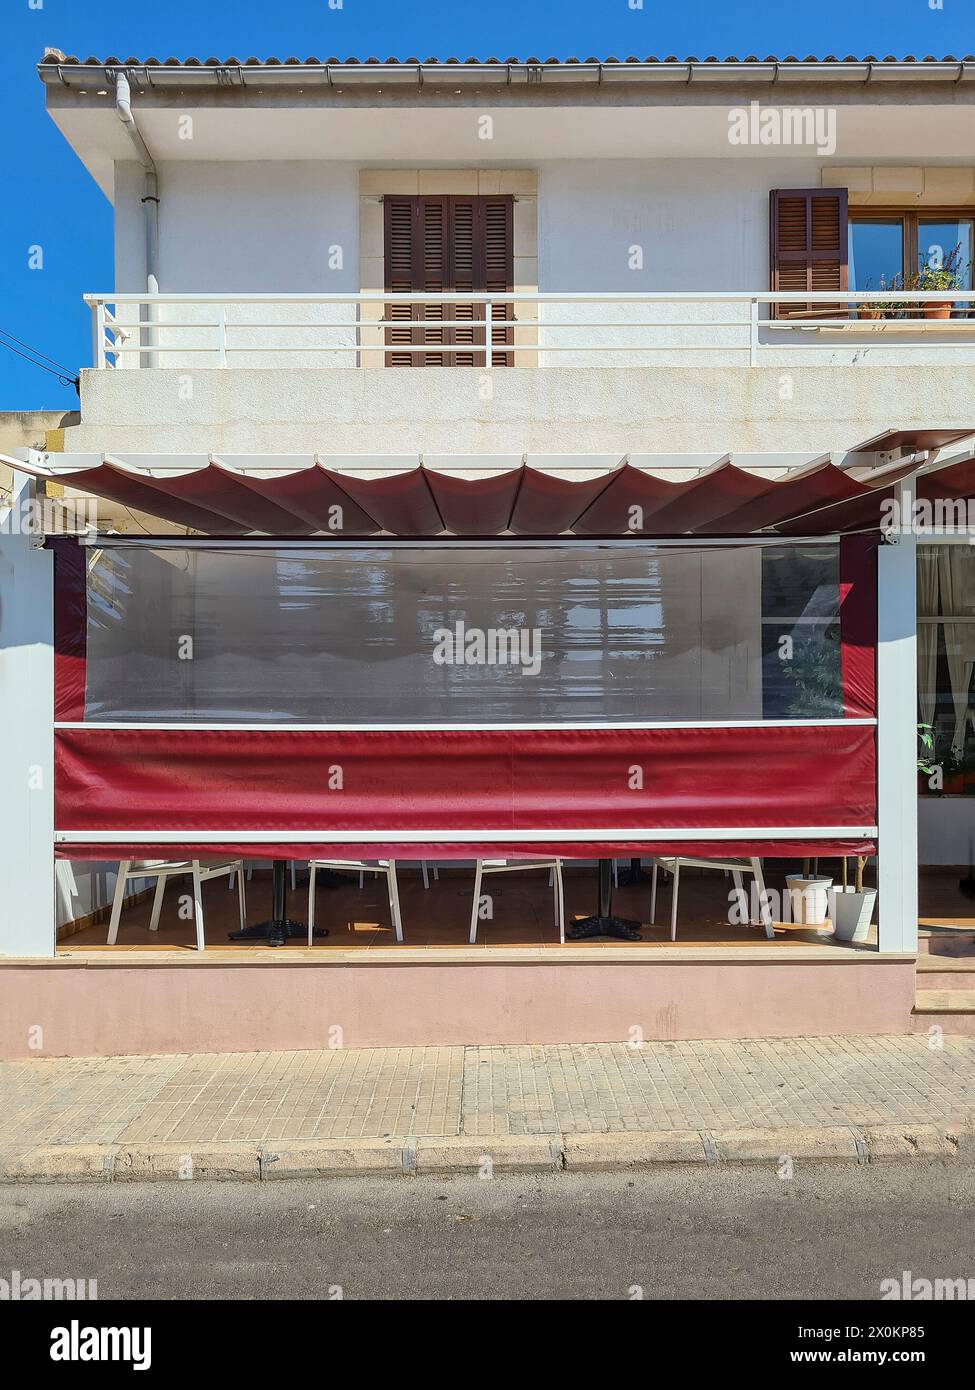 Siesta nel caldo di mezzogiorno, un ristorante ha chiuso e abbassato uno schermo per proteggere l'interno dagli occhi indiscreti e dai raggi del sole, Maiorca, Spagna Foto Stock